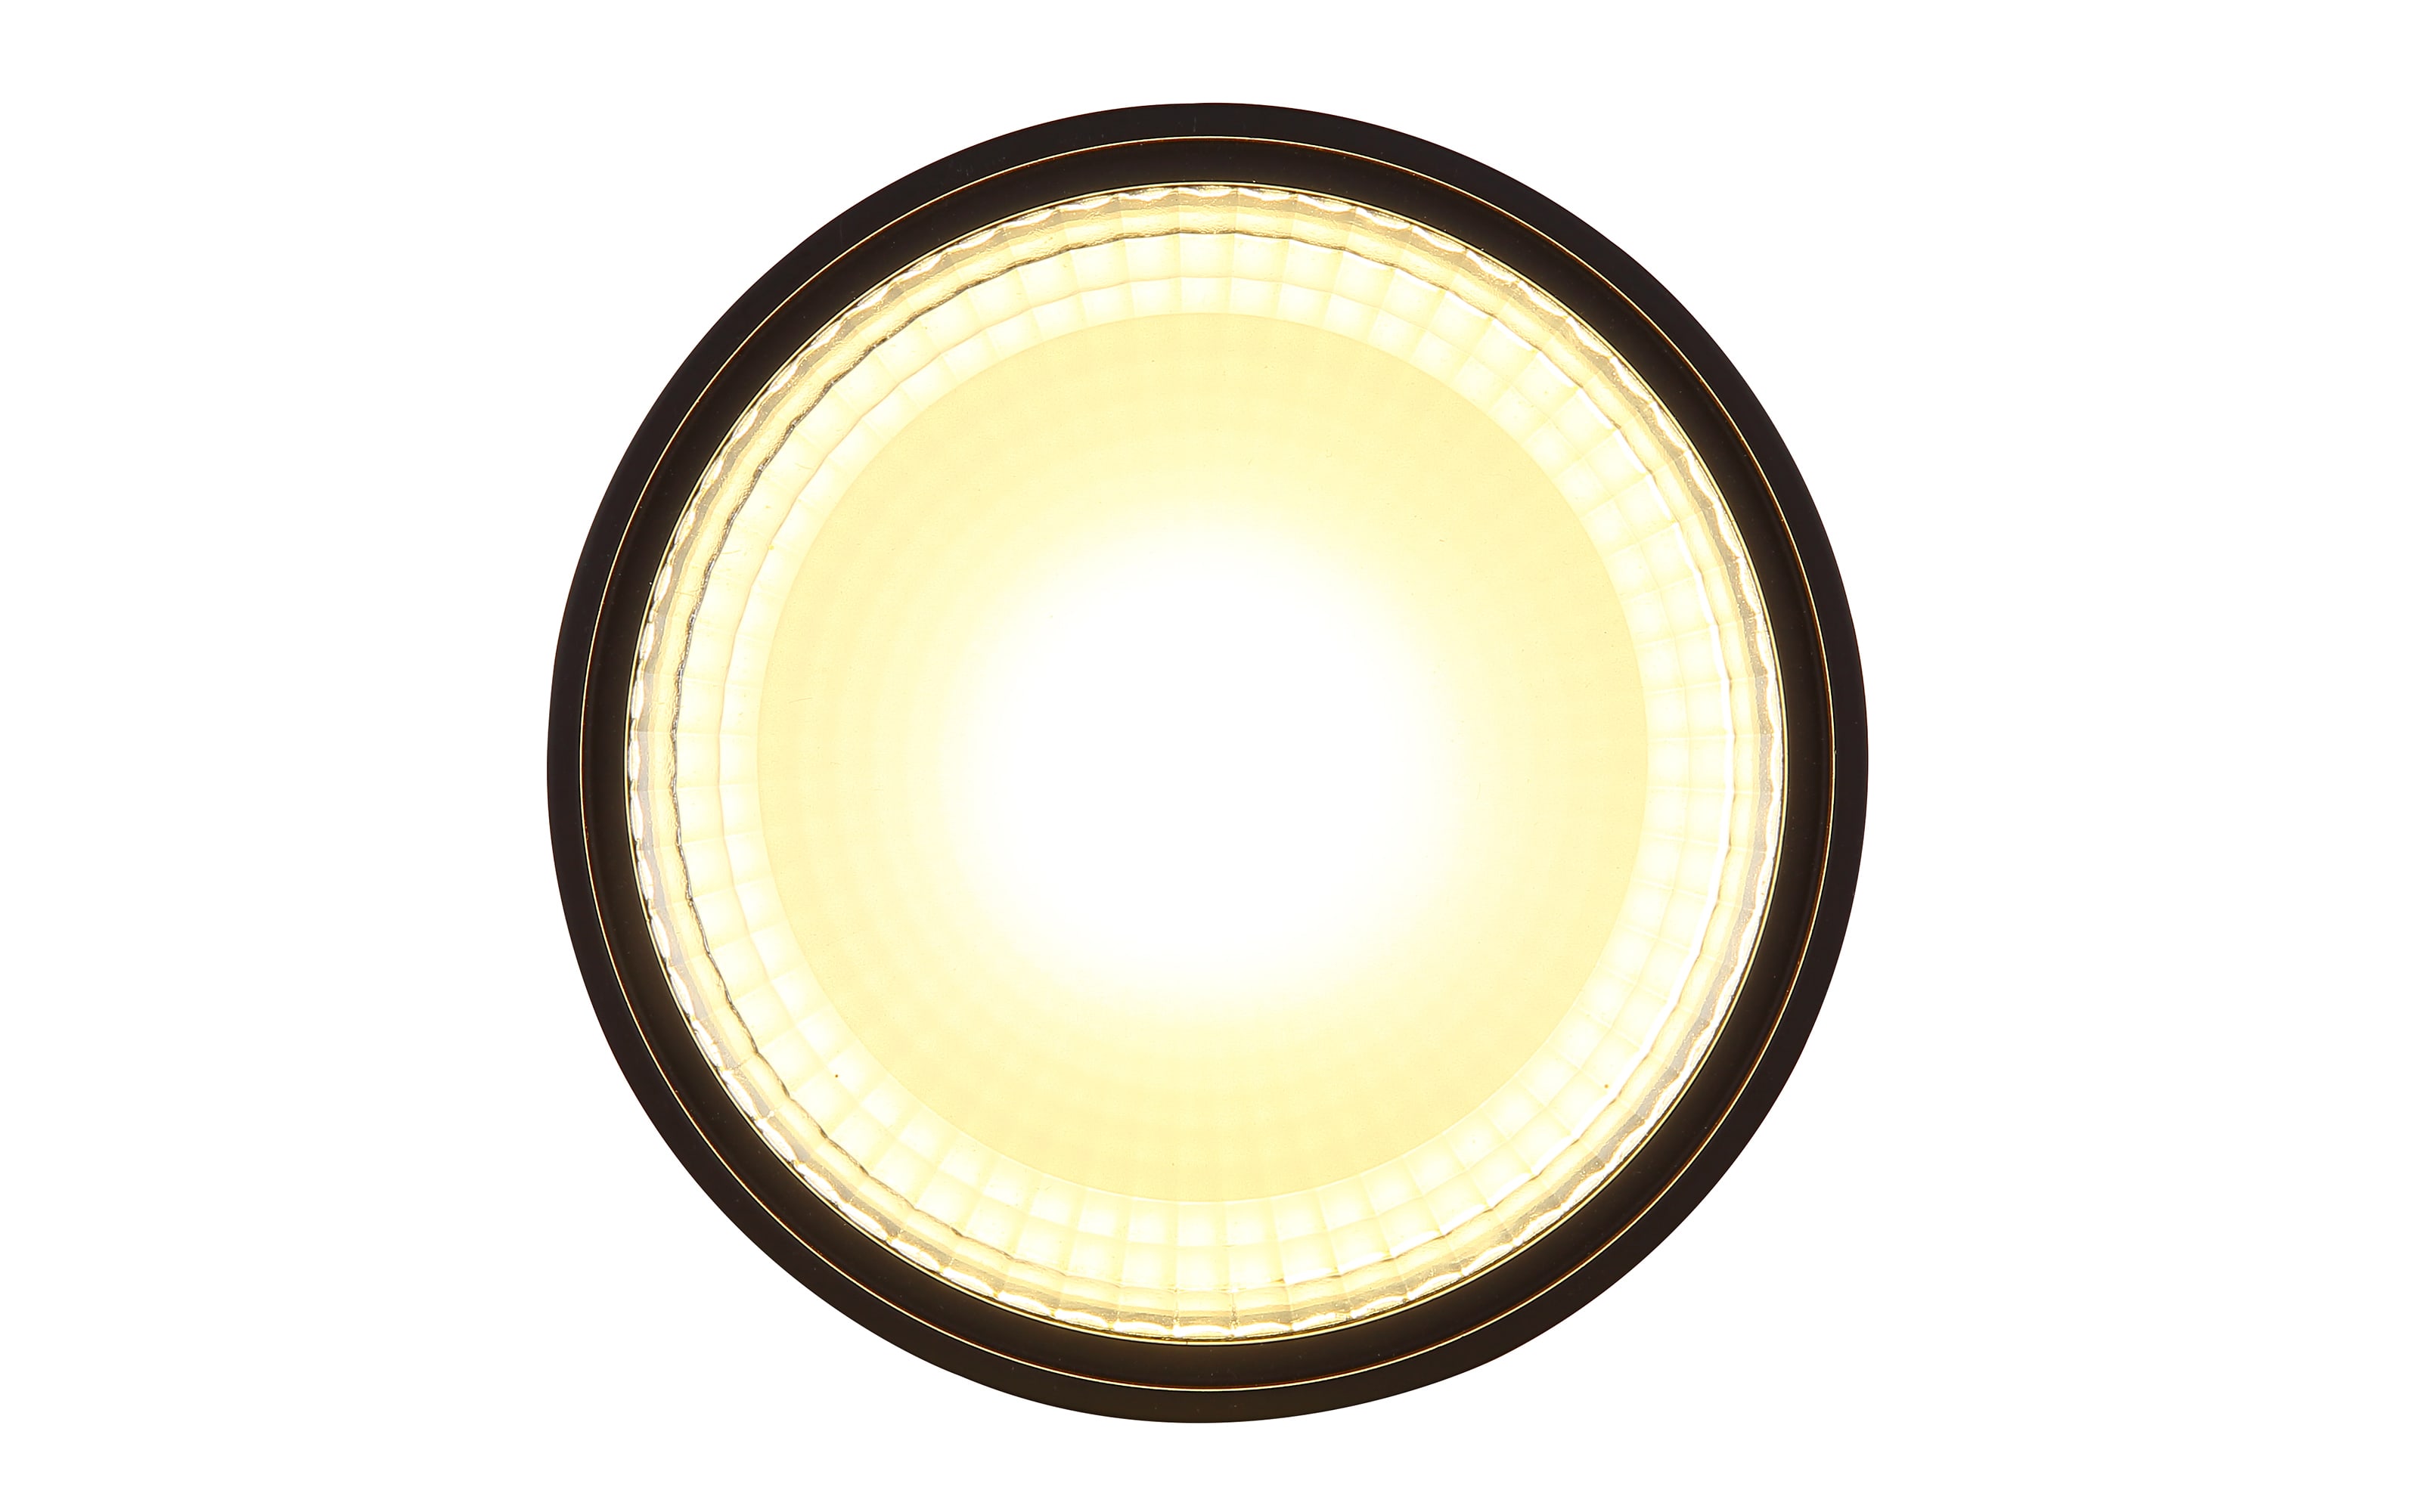 LED-Deckenleuchte Serena, schwarz, 11 cm